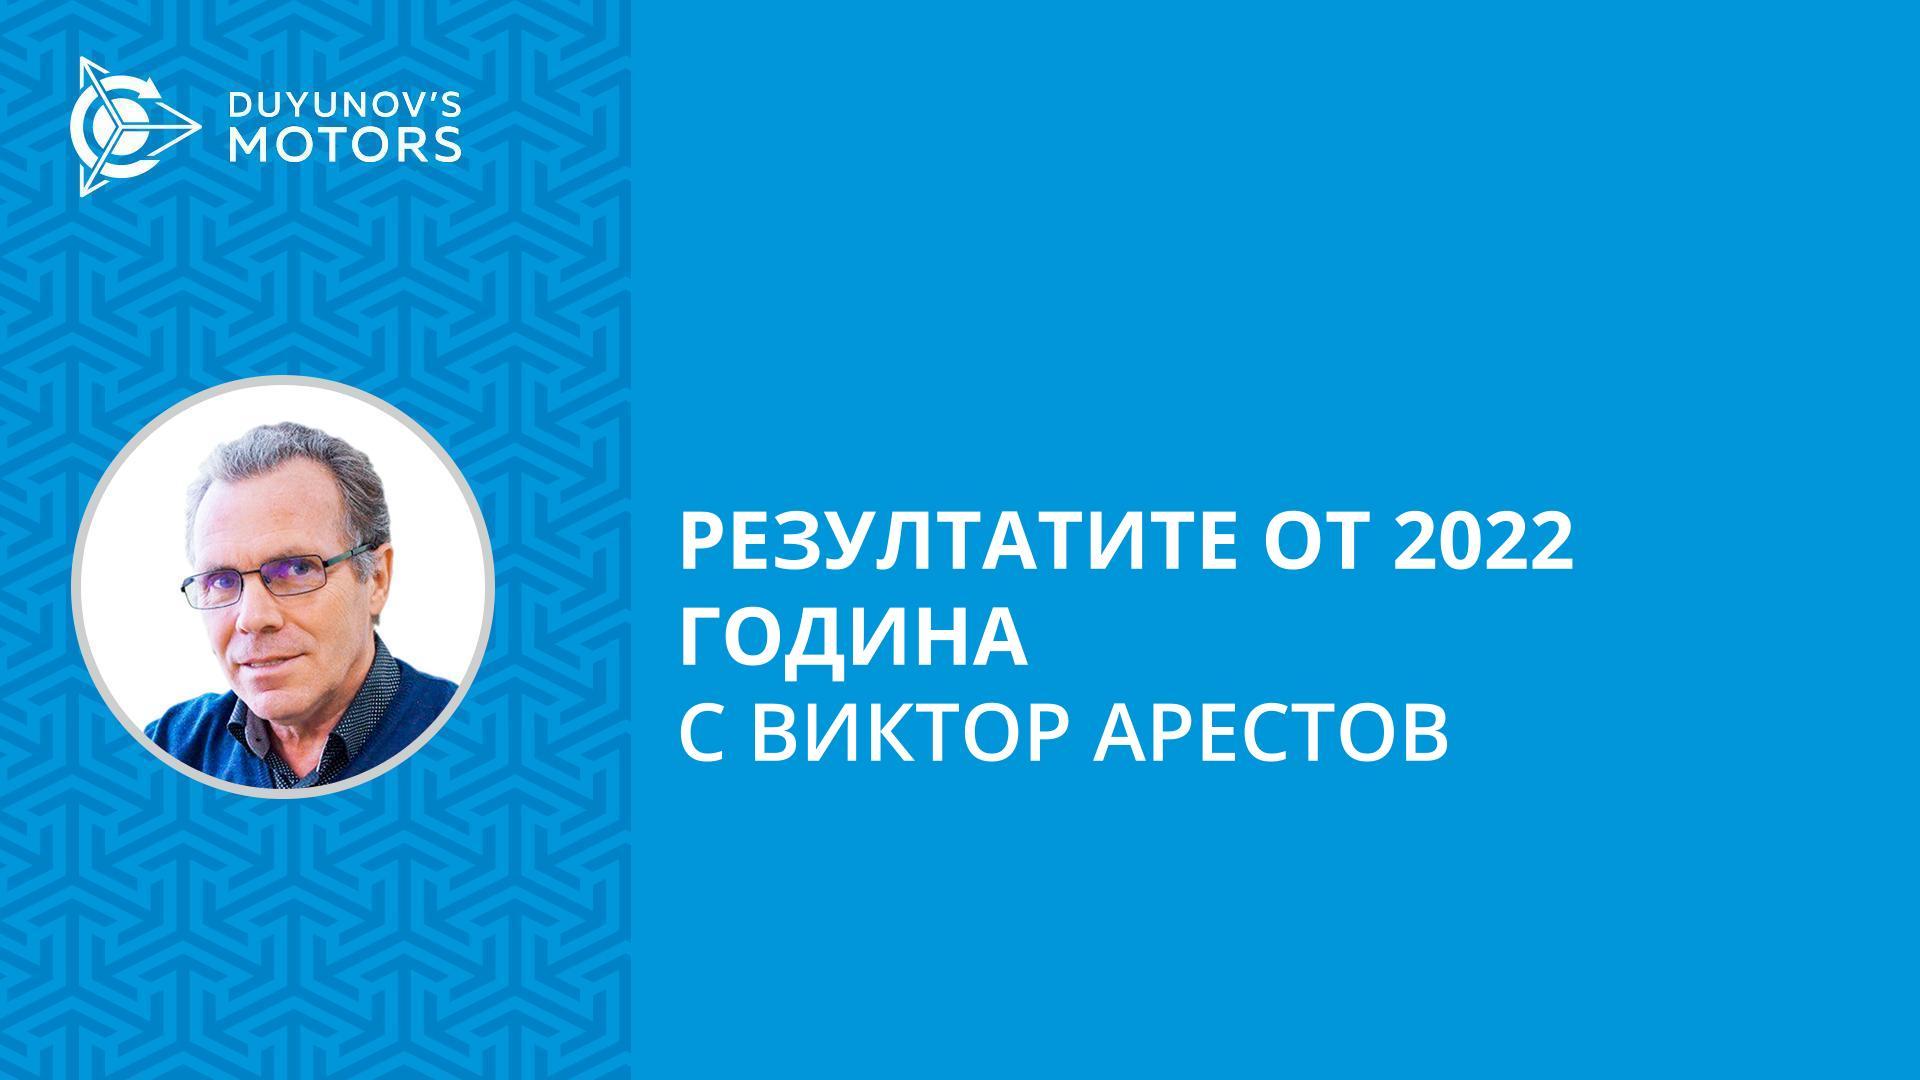 Нови разработки и популяризиране на технологията «Славянка»: резултатите от 2022 година с Виктор Арестов